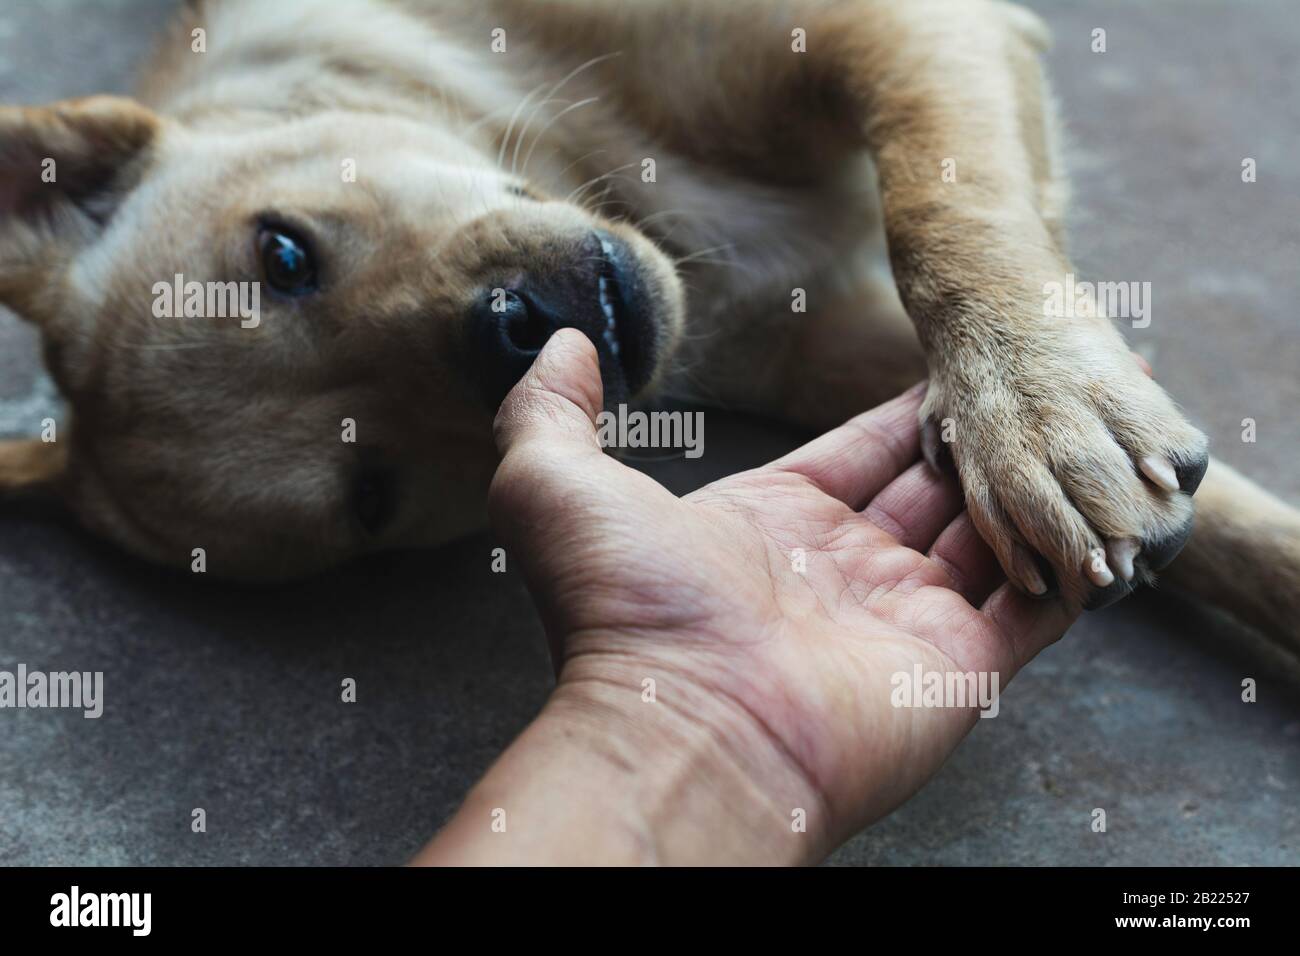 cane che stringe la mano con l'uomo, l'amicizia tra l'uomo e il cane. Zampa del cane e scuotimento della mano umana. Foto Stock